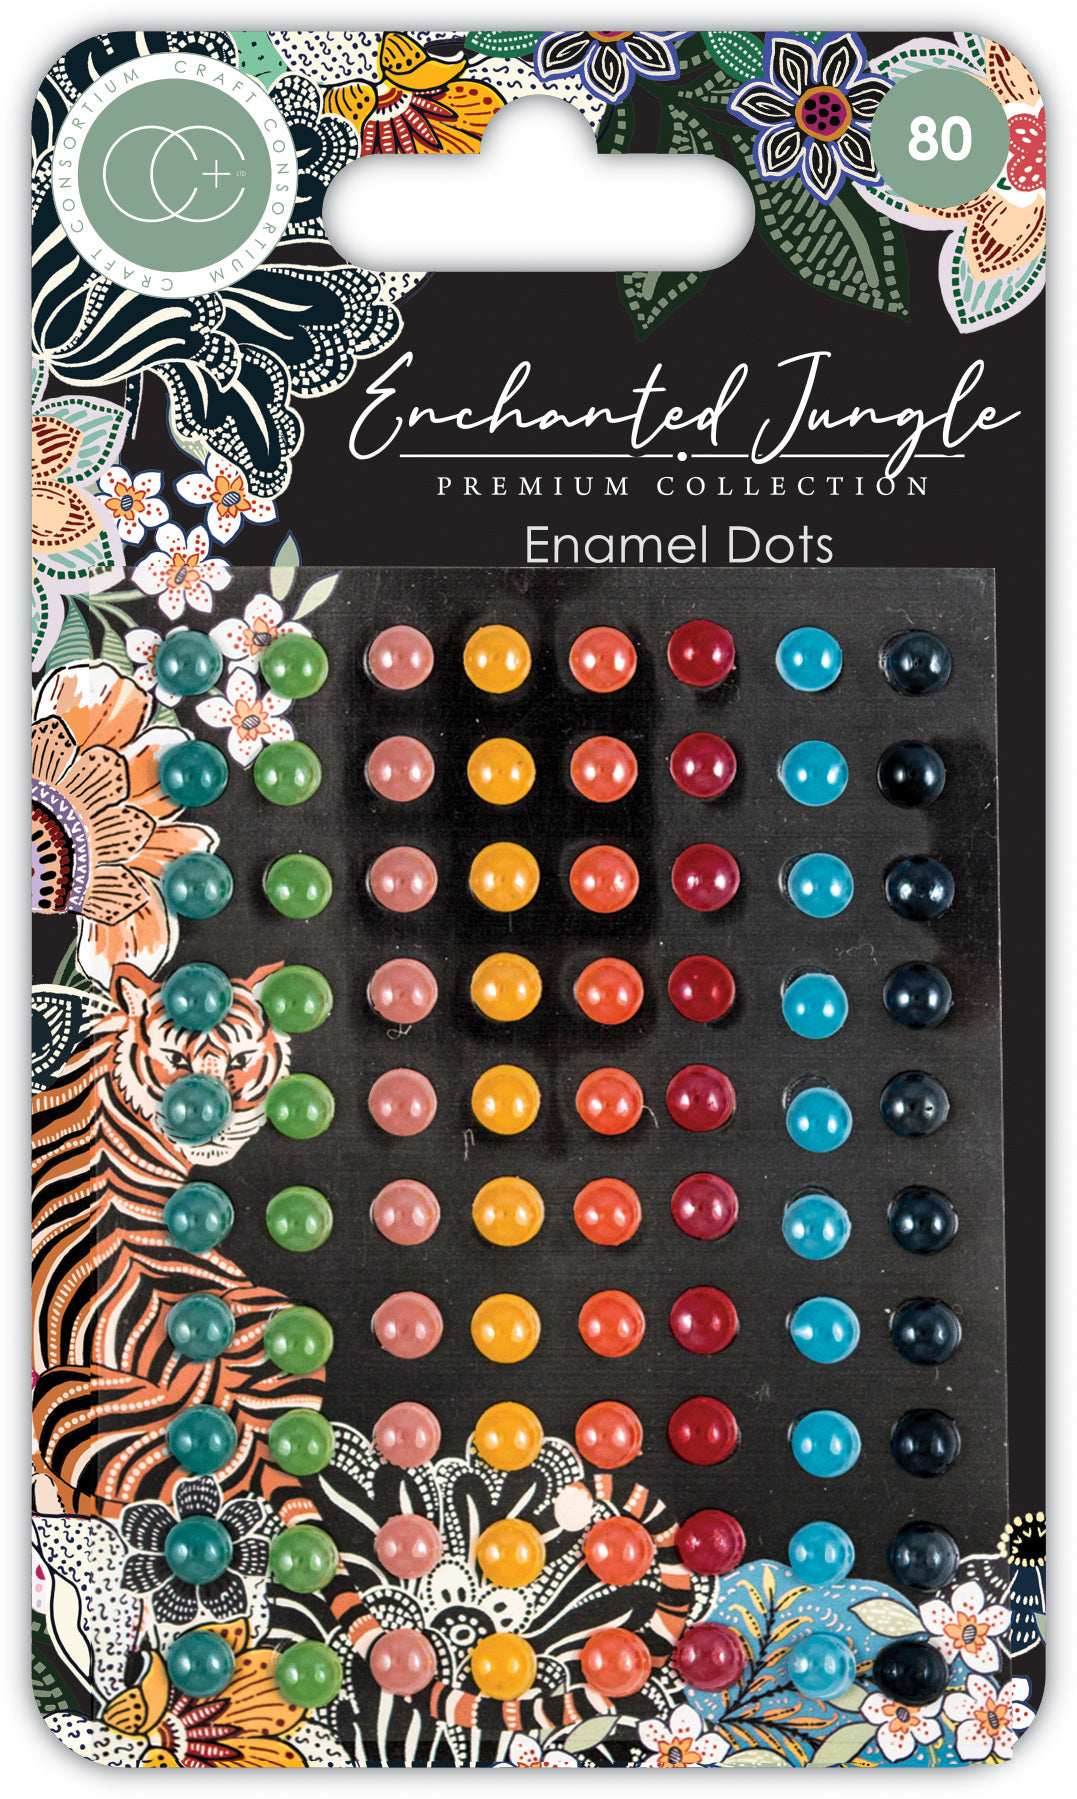 Craft Consortium Enchanted Jungle - Enamel Dots